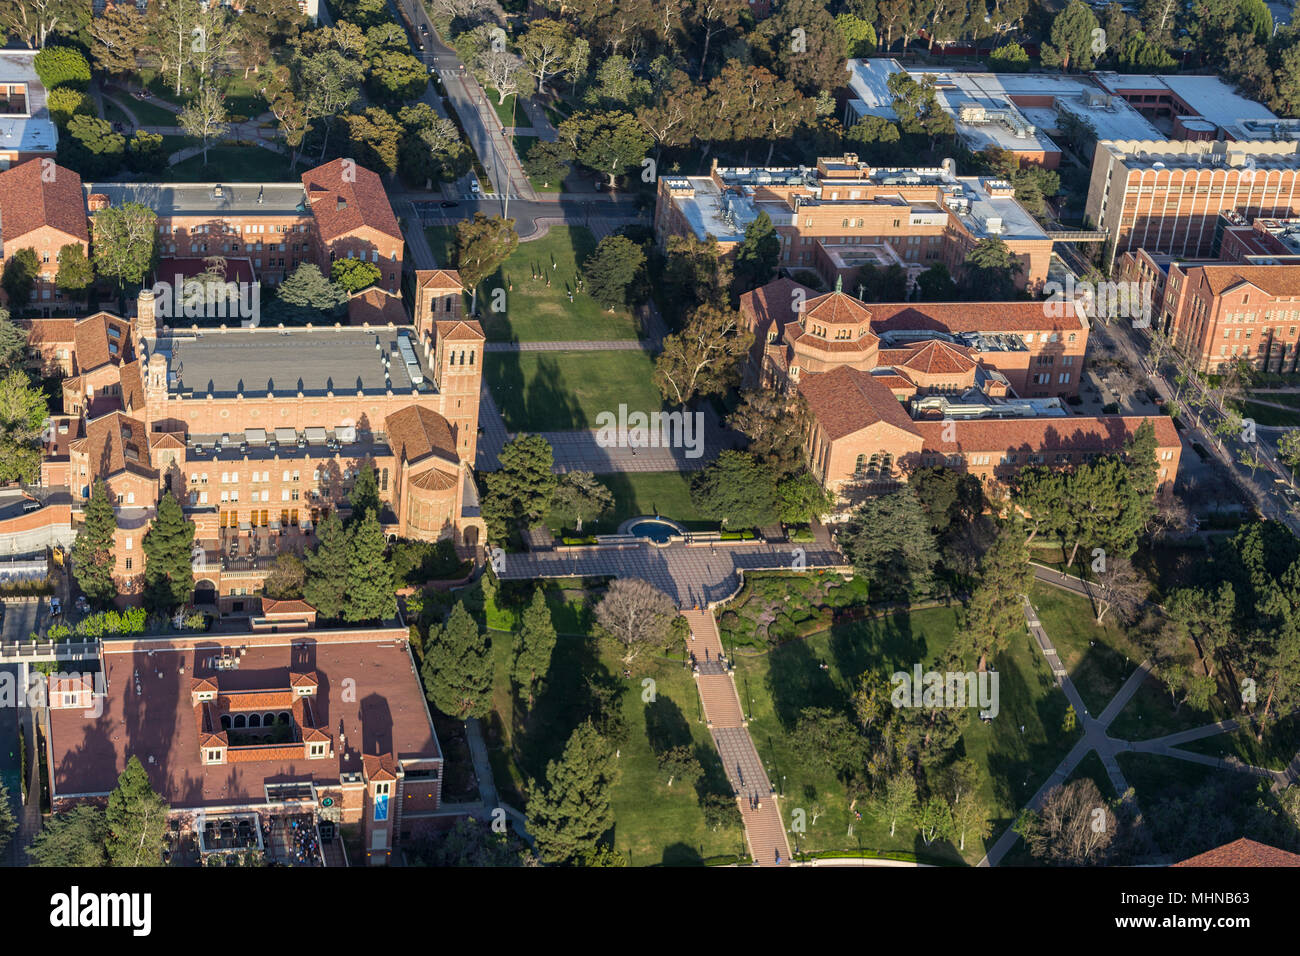 Los Angeles, California, Stati Uniti d'America - 18 Aprile 2018: Pomeriggio Vista aerea del quad, passaggi e edifici storici sull'UCLA campus vicino a Westwood. Foto Stock